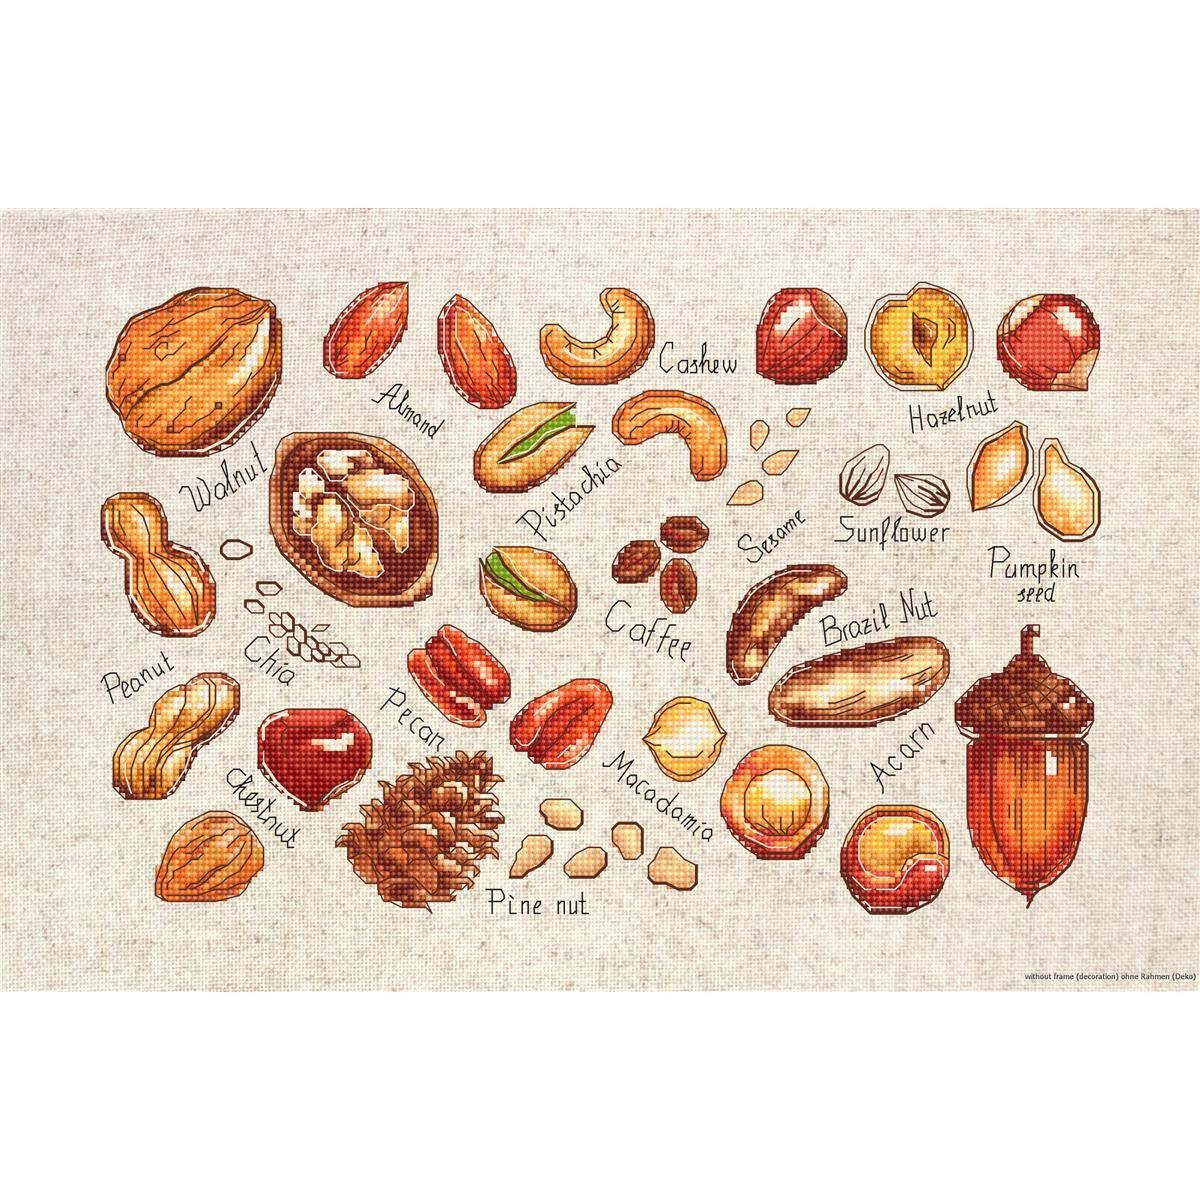 Illustrierte Symbole verschiedener Nüsse und Samen...